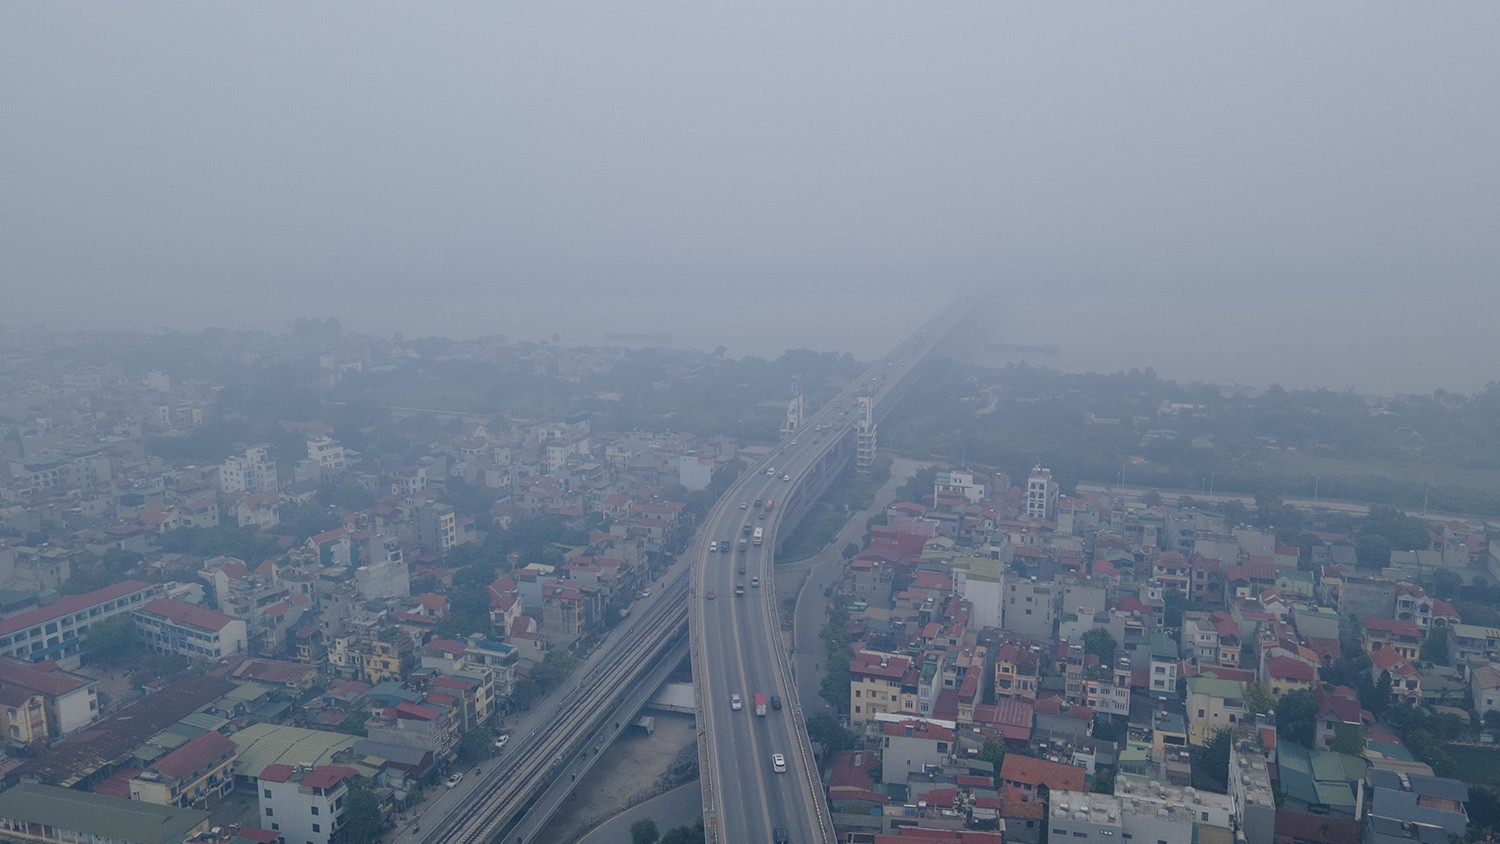 Trung tâm Hà Nội chìm trong sương mù dày đặc, chất lượng không khí nhiều nơi ở “mức đỏ” - 11